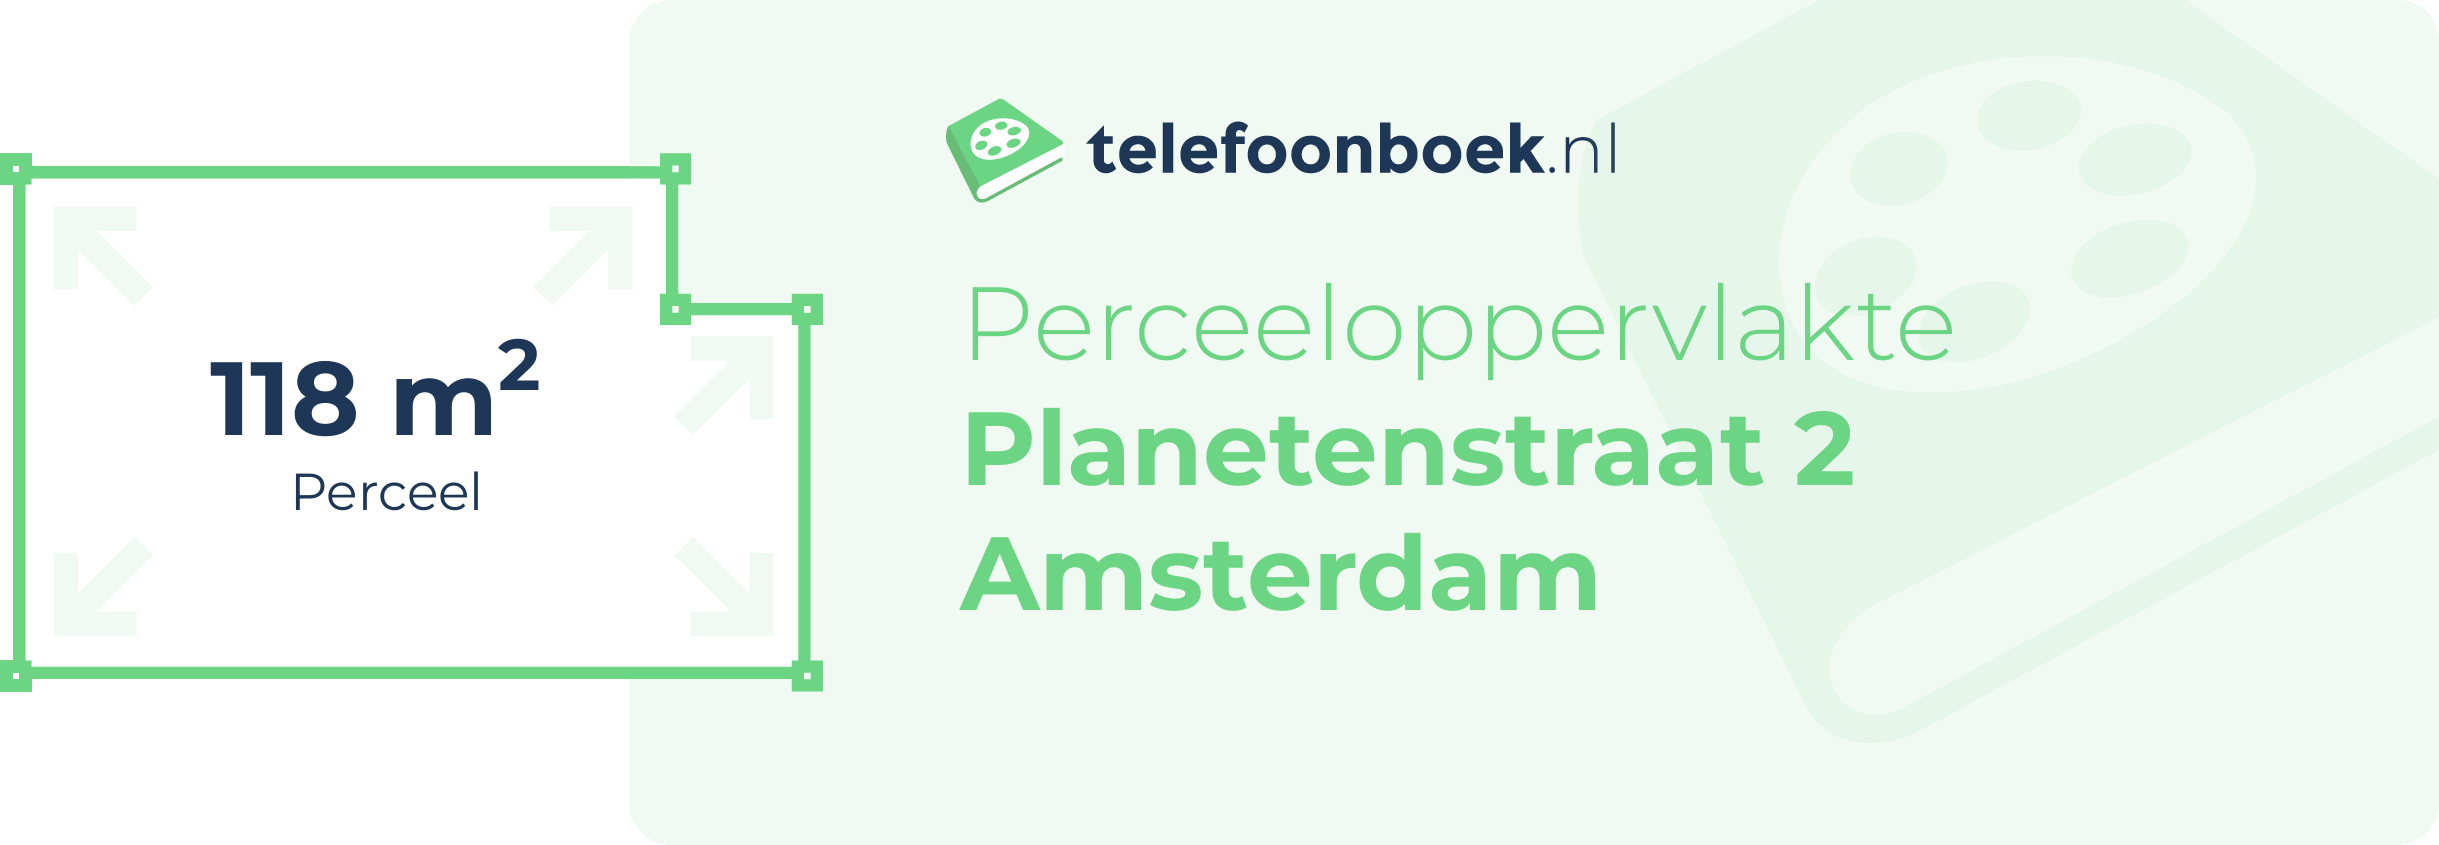 Perceeloppervlakte Planetenstraat 2 Amsterdam